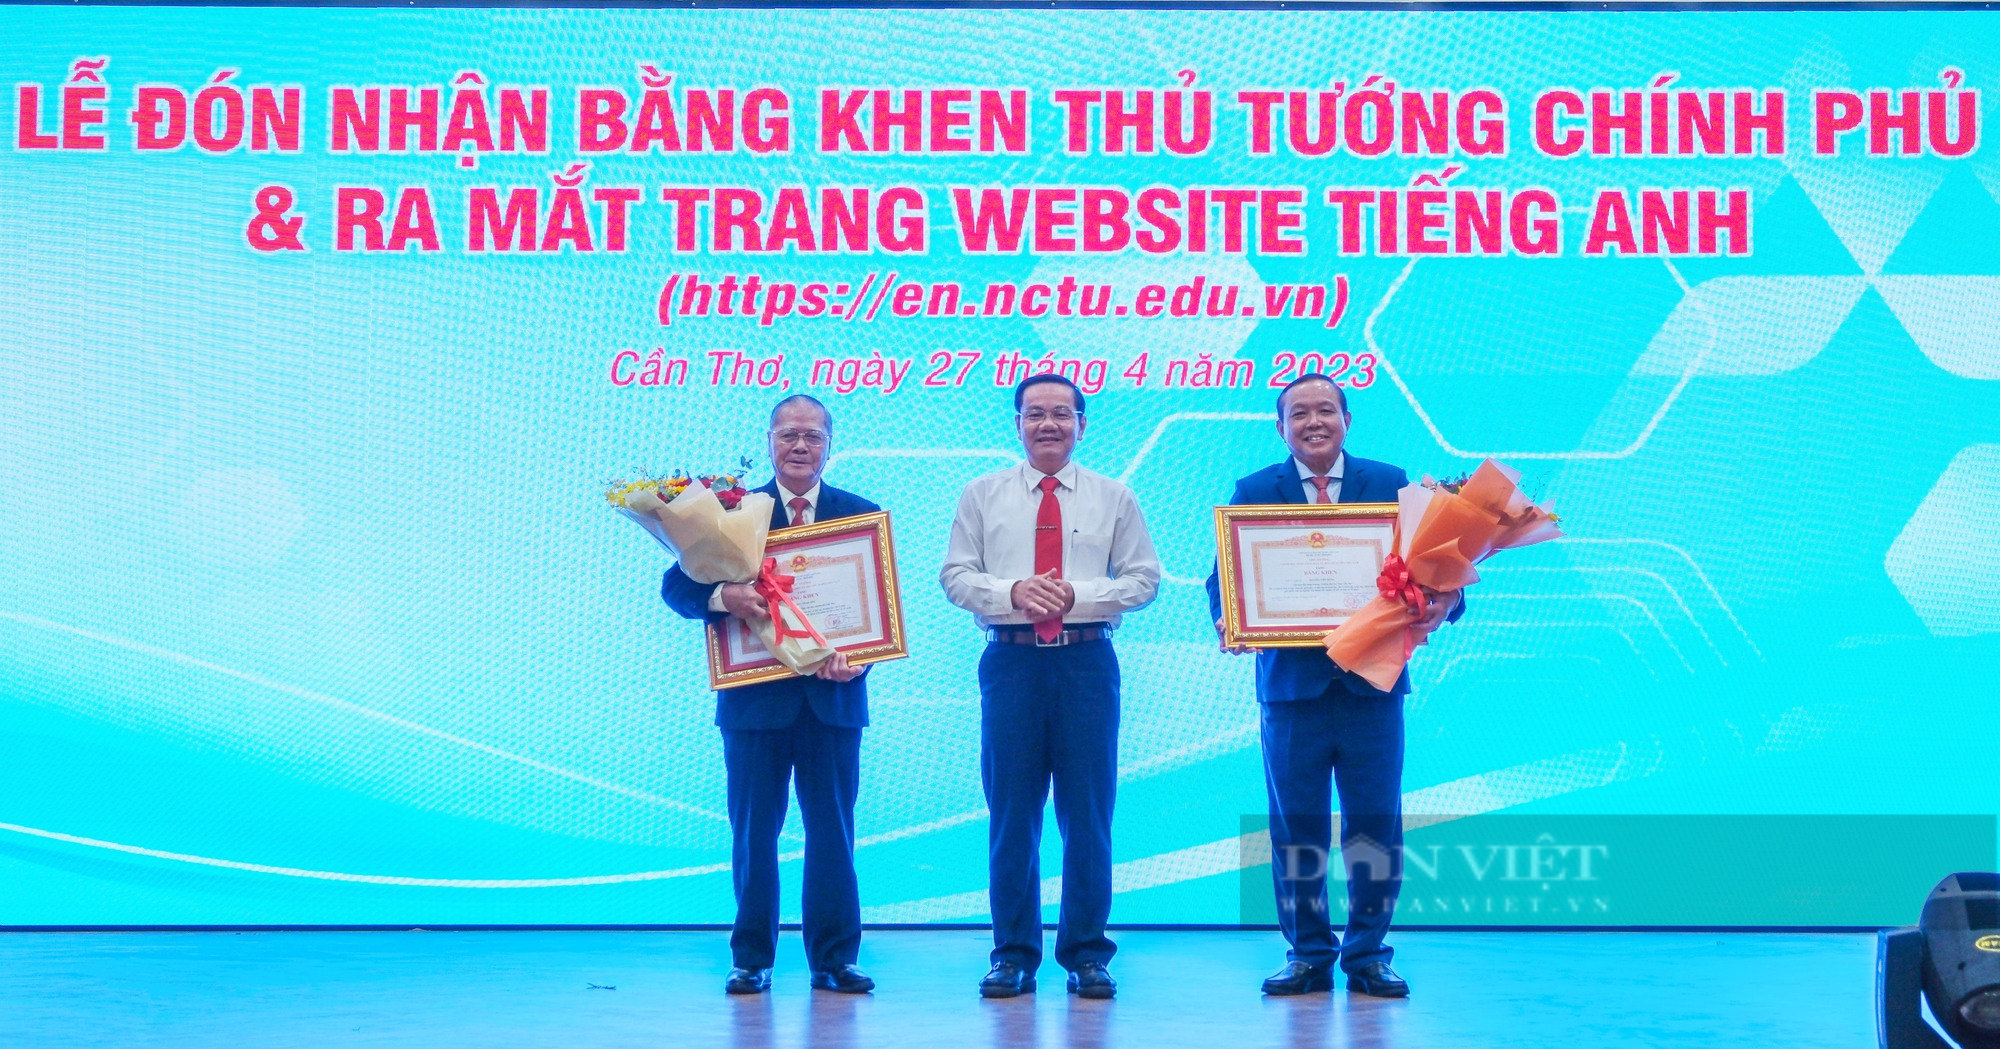 Trường Đại học Nam Cần Thơ đón nhận bằng khen của Thủ tướng Chính phủ - Ảnh 1.